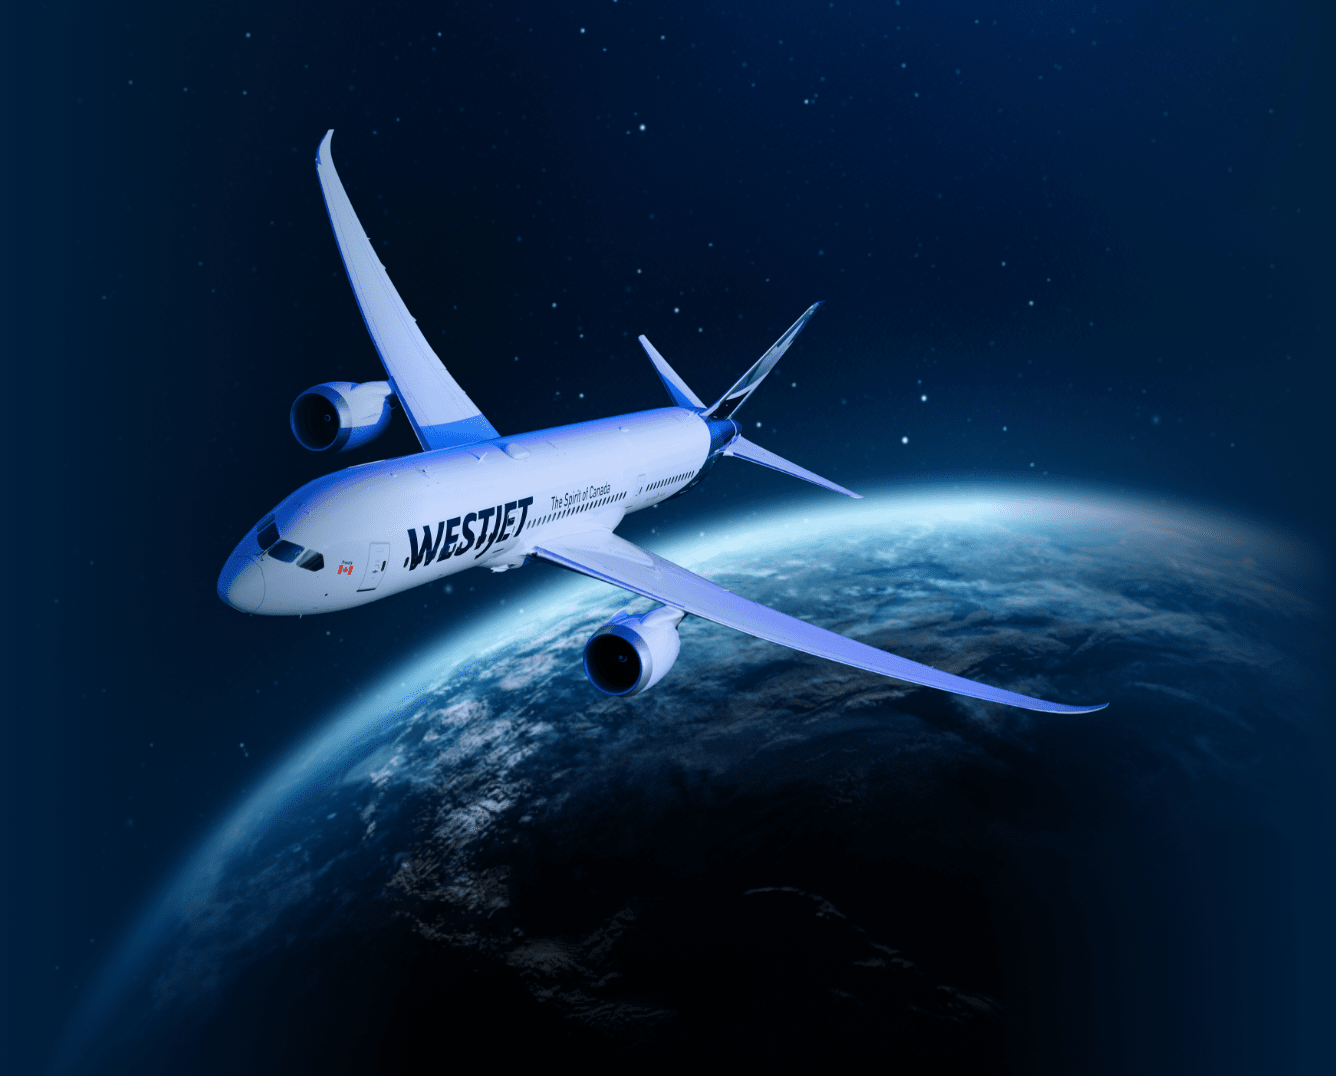 Appareil WestJet-x volant au-delà de la Terre